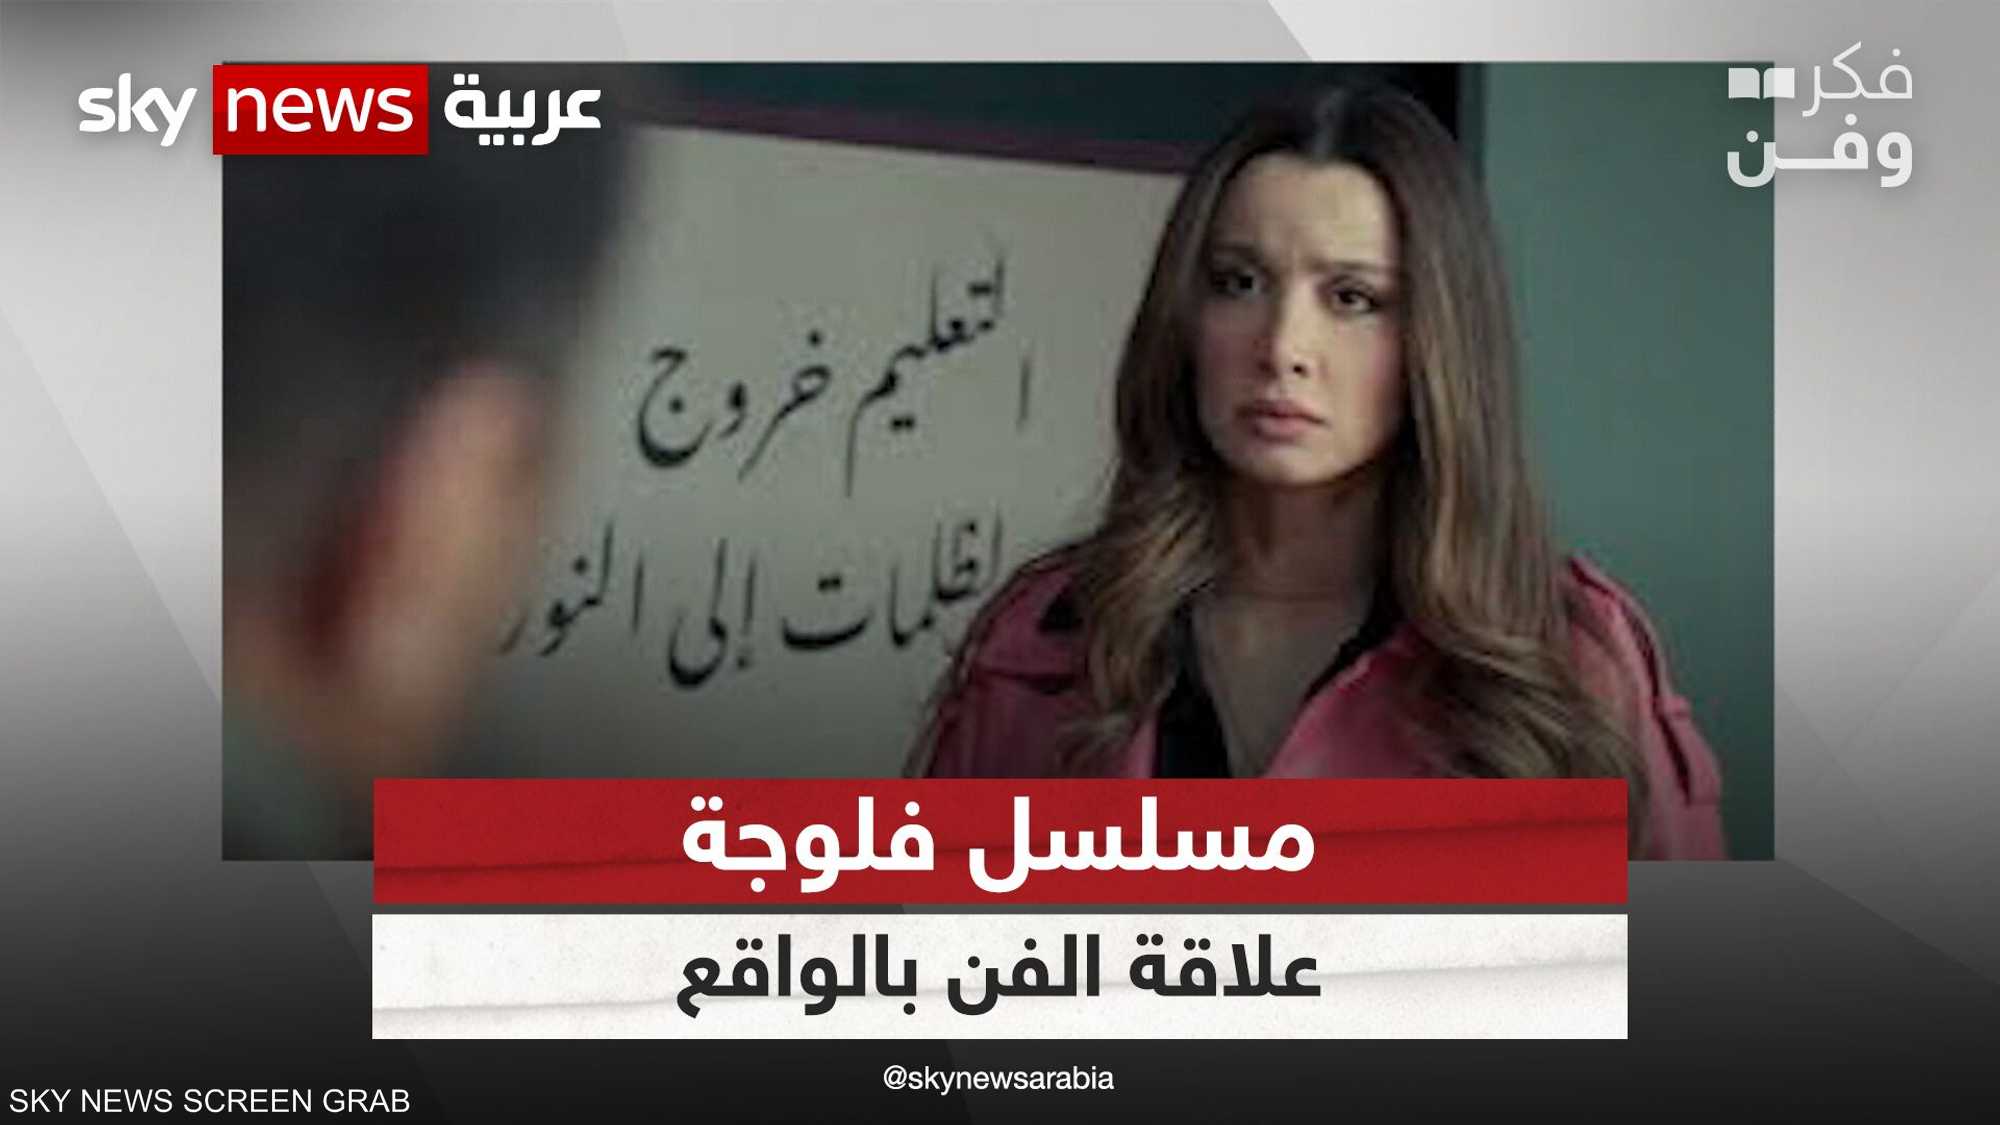 الجدل يستمرفي تونس حول مسلسل "فلوجة"